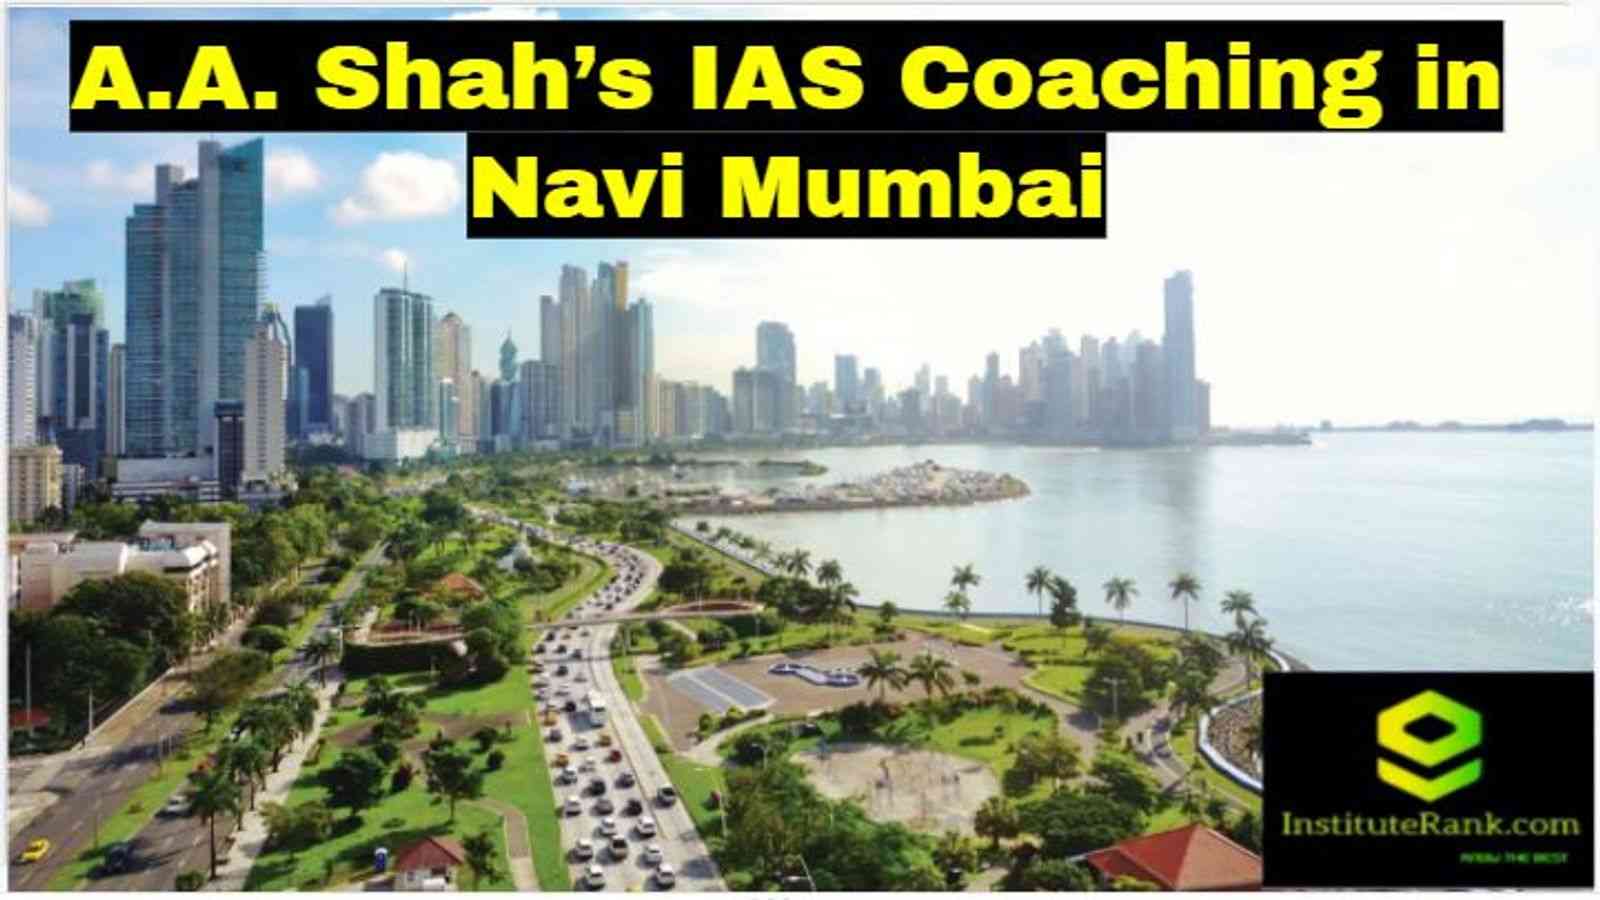 A.A. Shah's IAS Coaching in Navi Mumbai